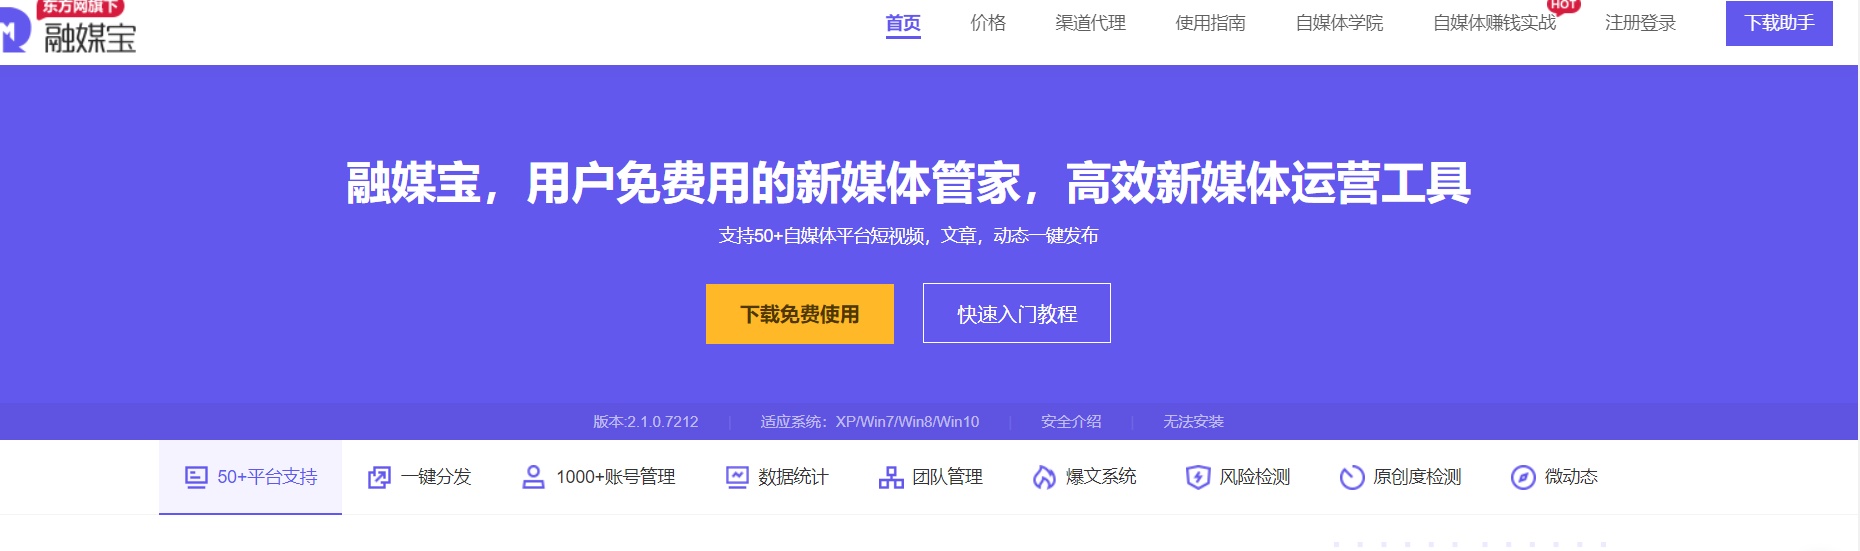 搜狐号,搜狐号自媒体平台,搜狐号收益